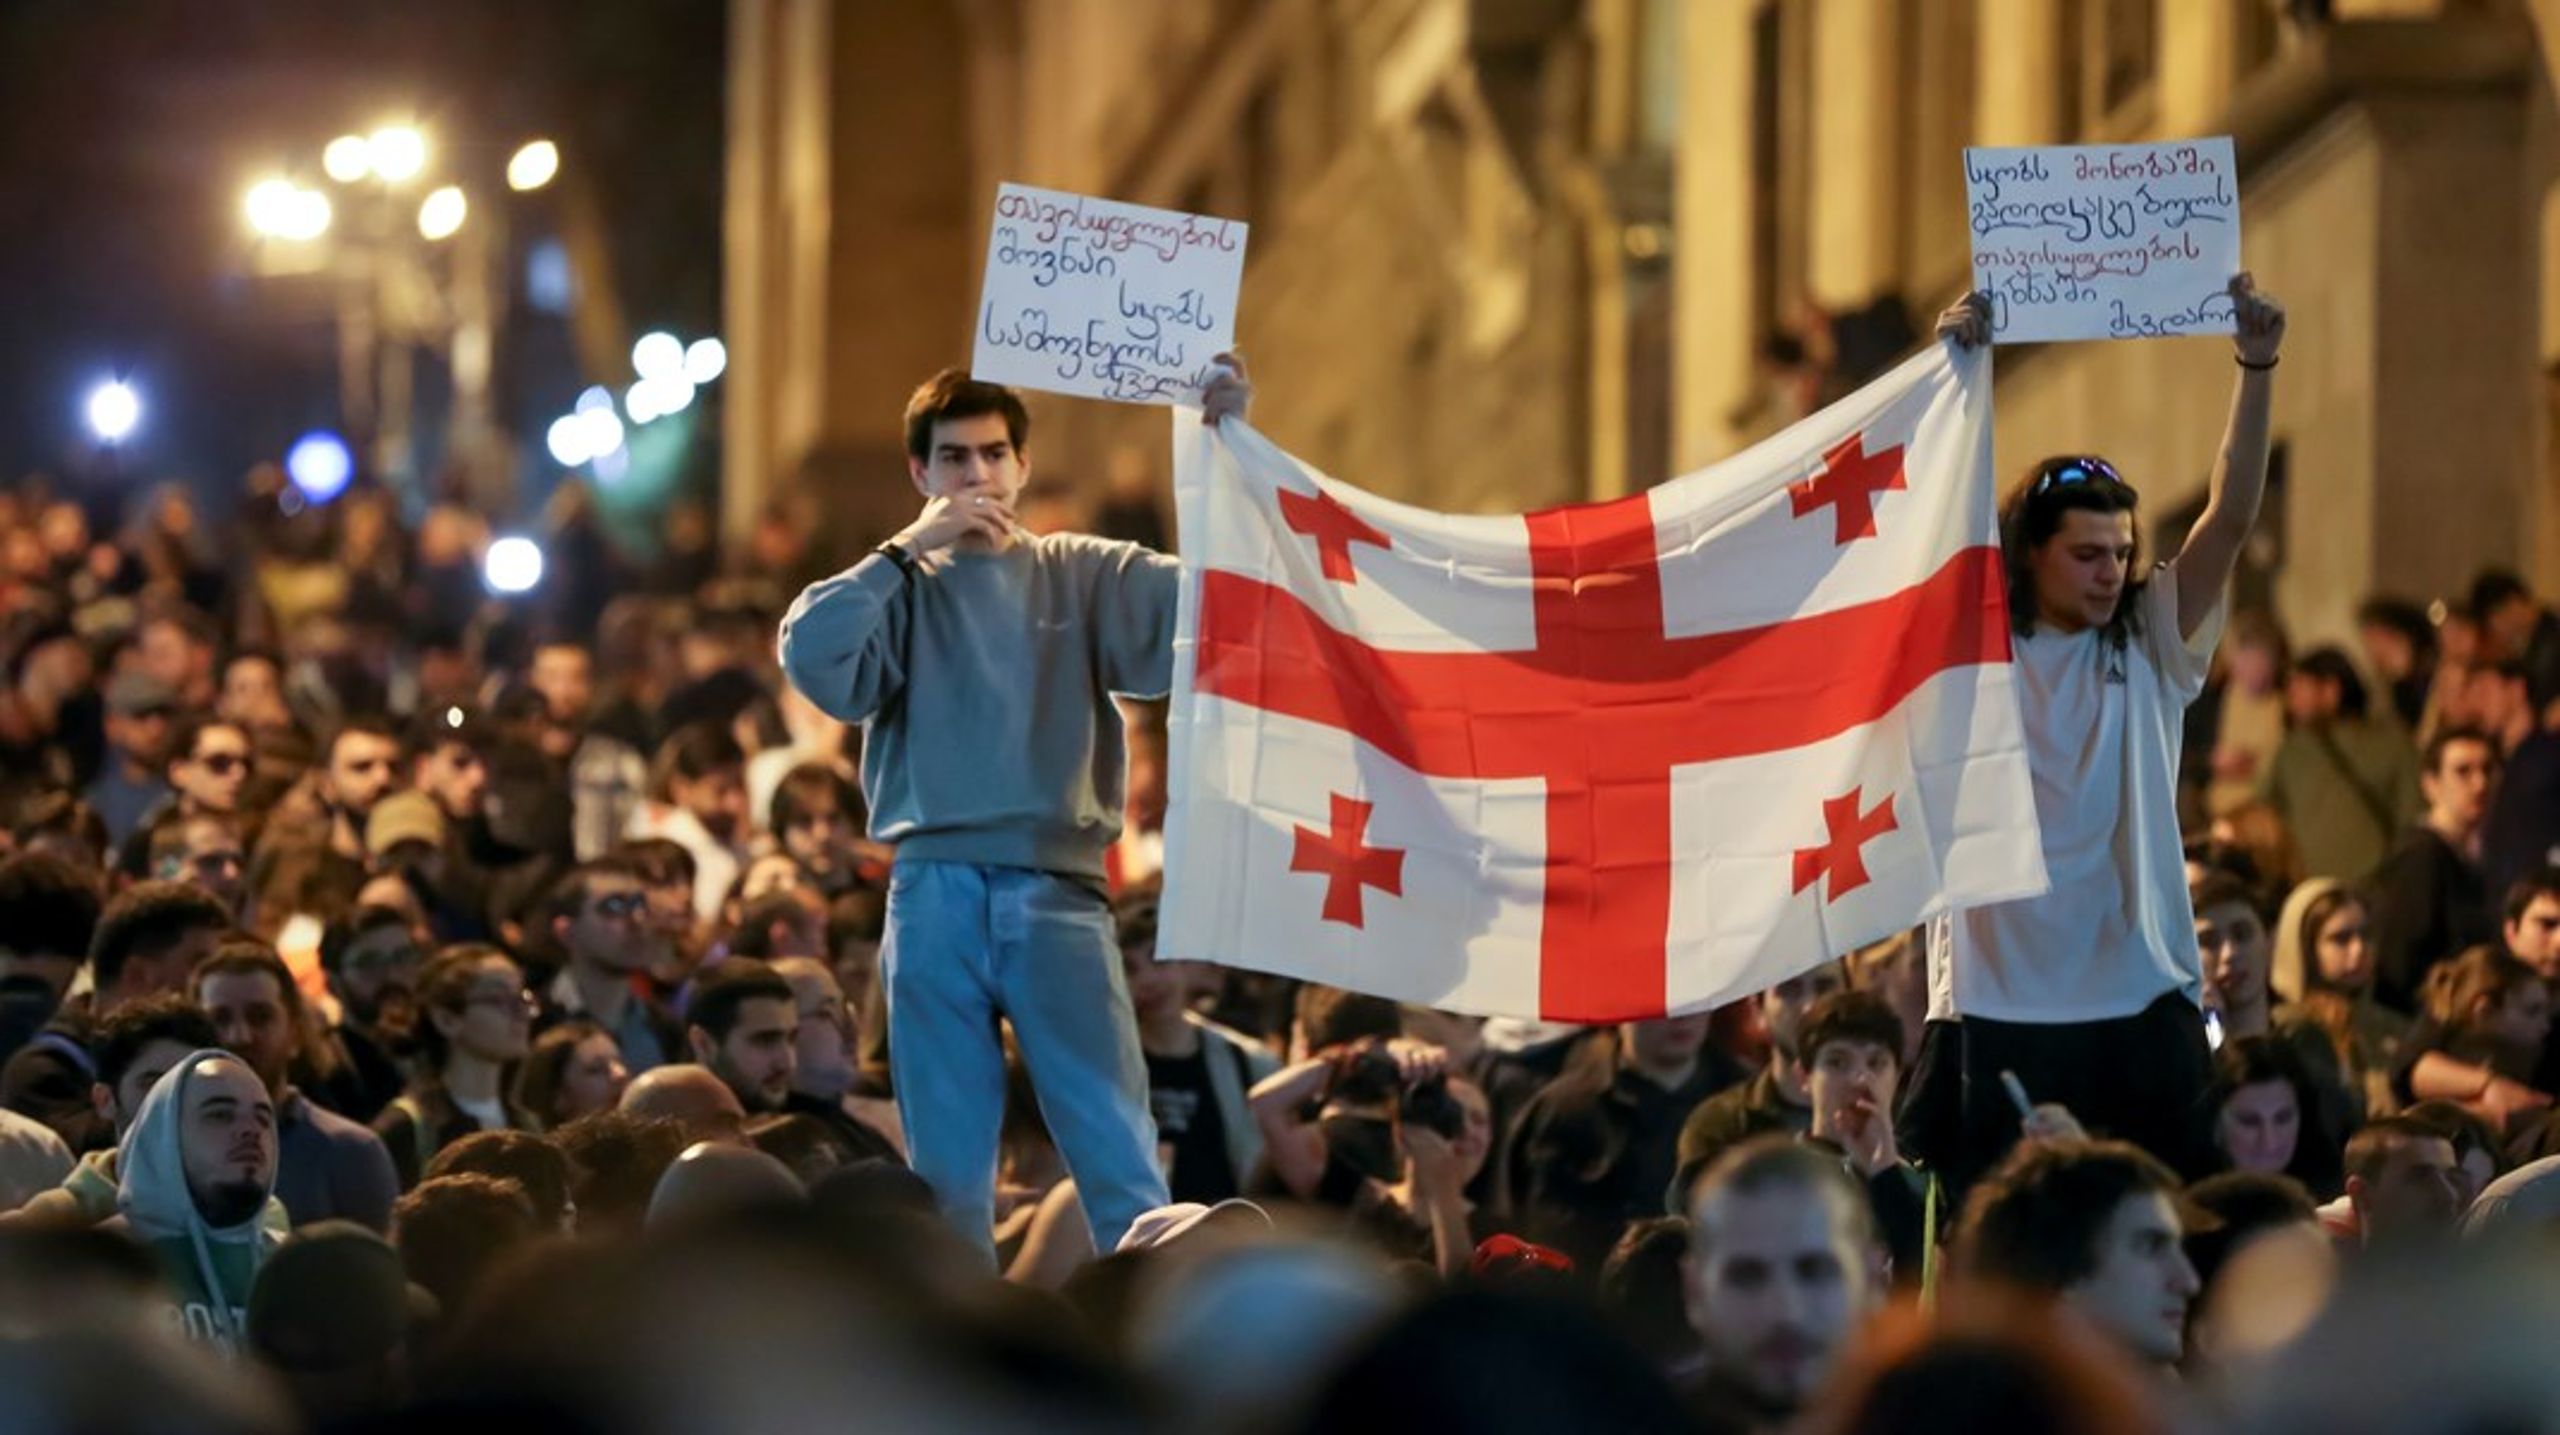 Det georgiske regeringsparti, Georgiens Drøm, måtte sidste år opgive at få vedtaget en lignende lov på grund af store folkelige protester, skriver&nbsp;Jørgen Staun.